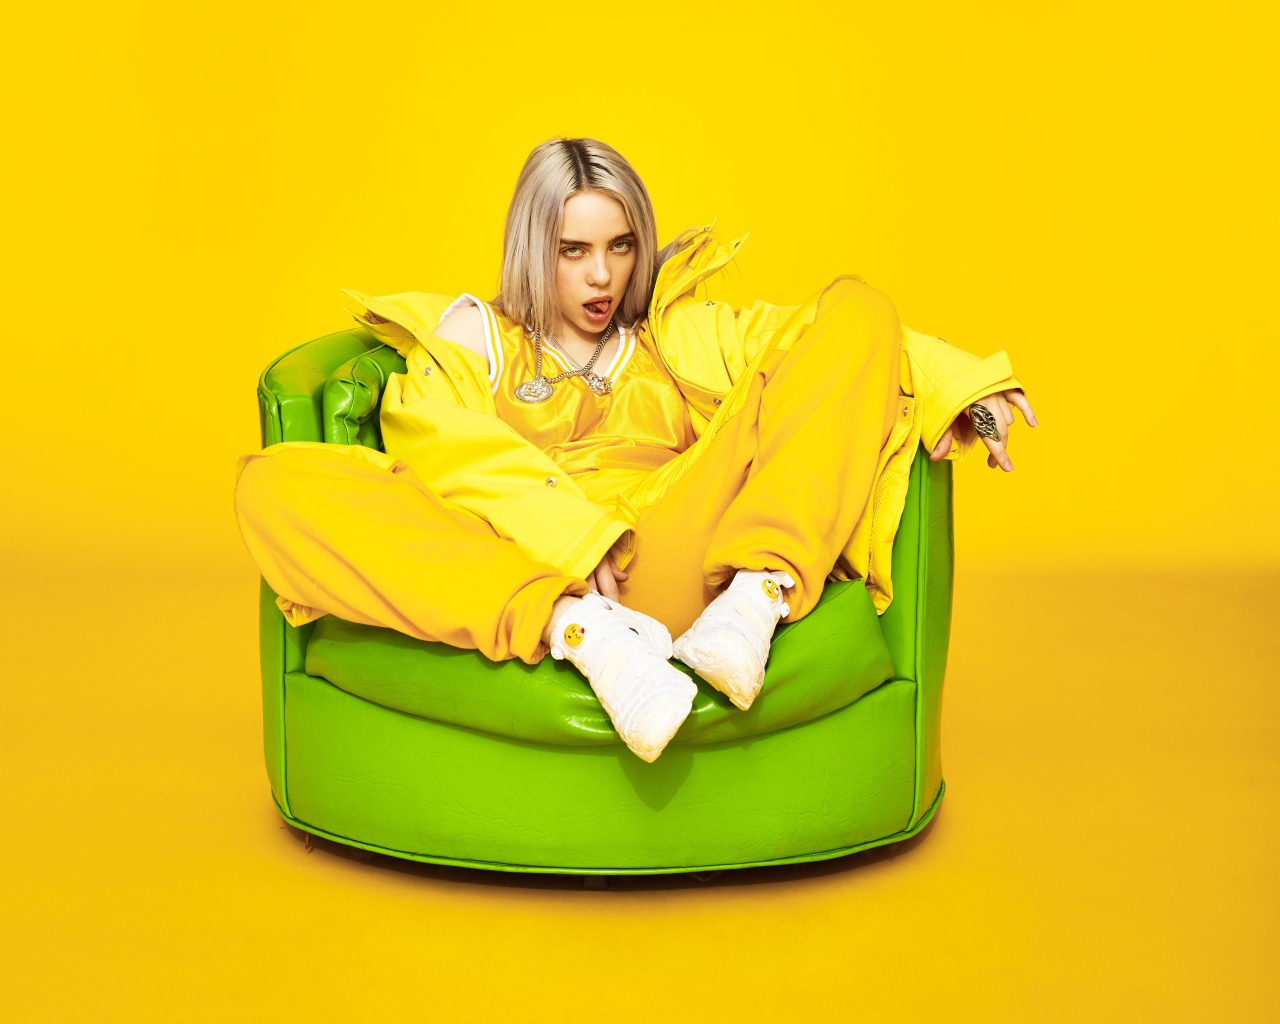 Американская певица Билли Айлиш в кресле на желтом фоне